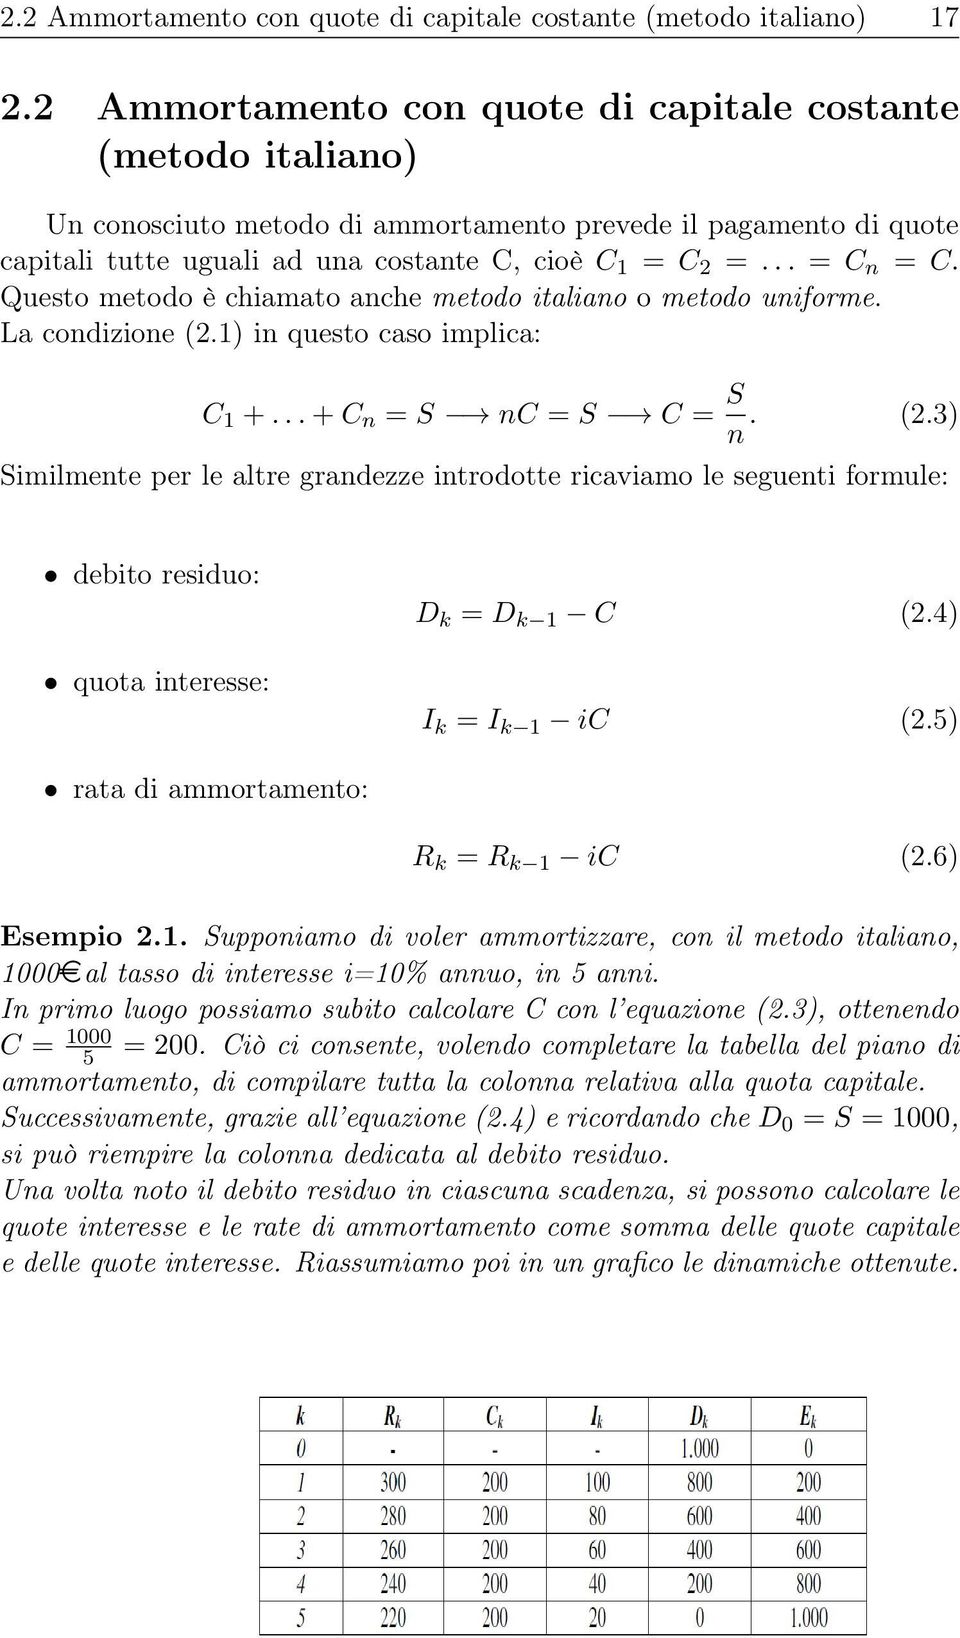 Questo metodo è chiamato anche metodo italiano o metodo uniforme. La condizione (2.